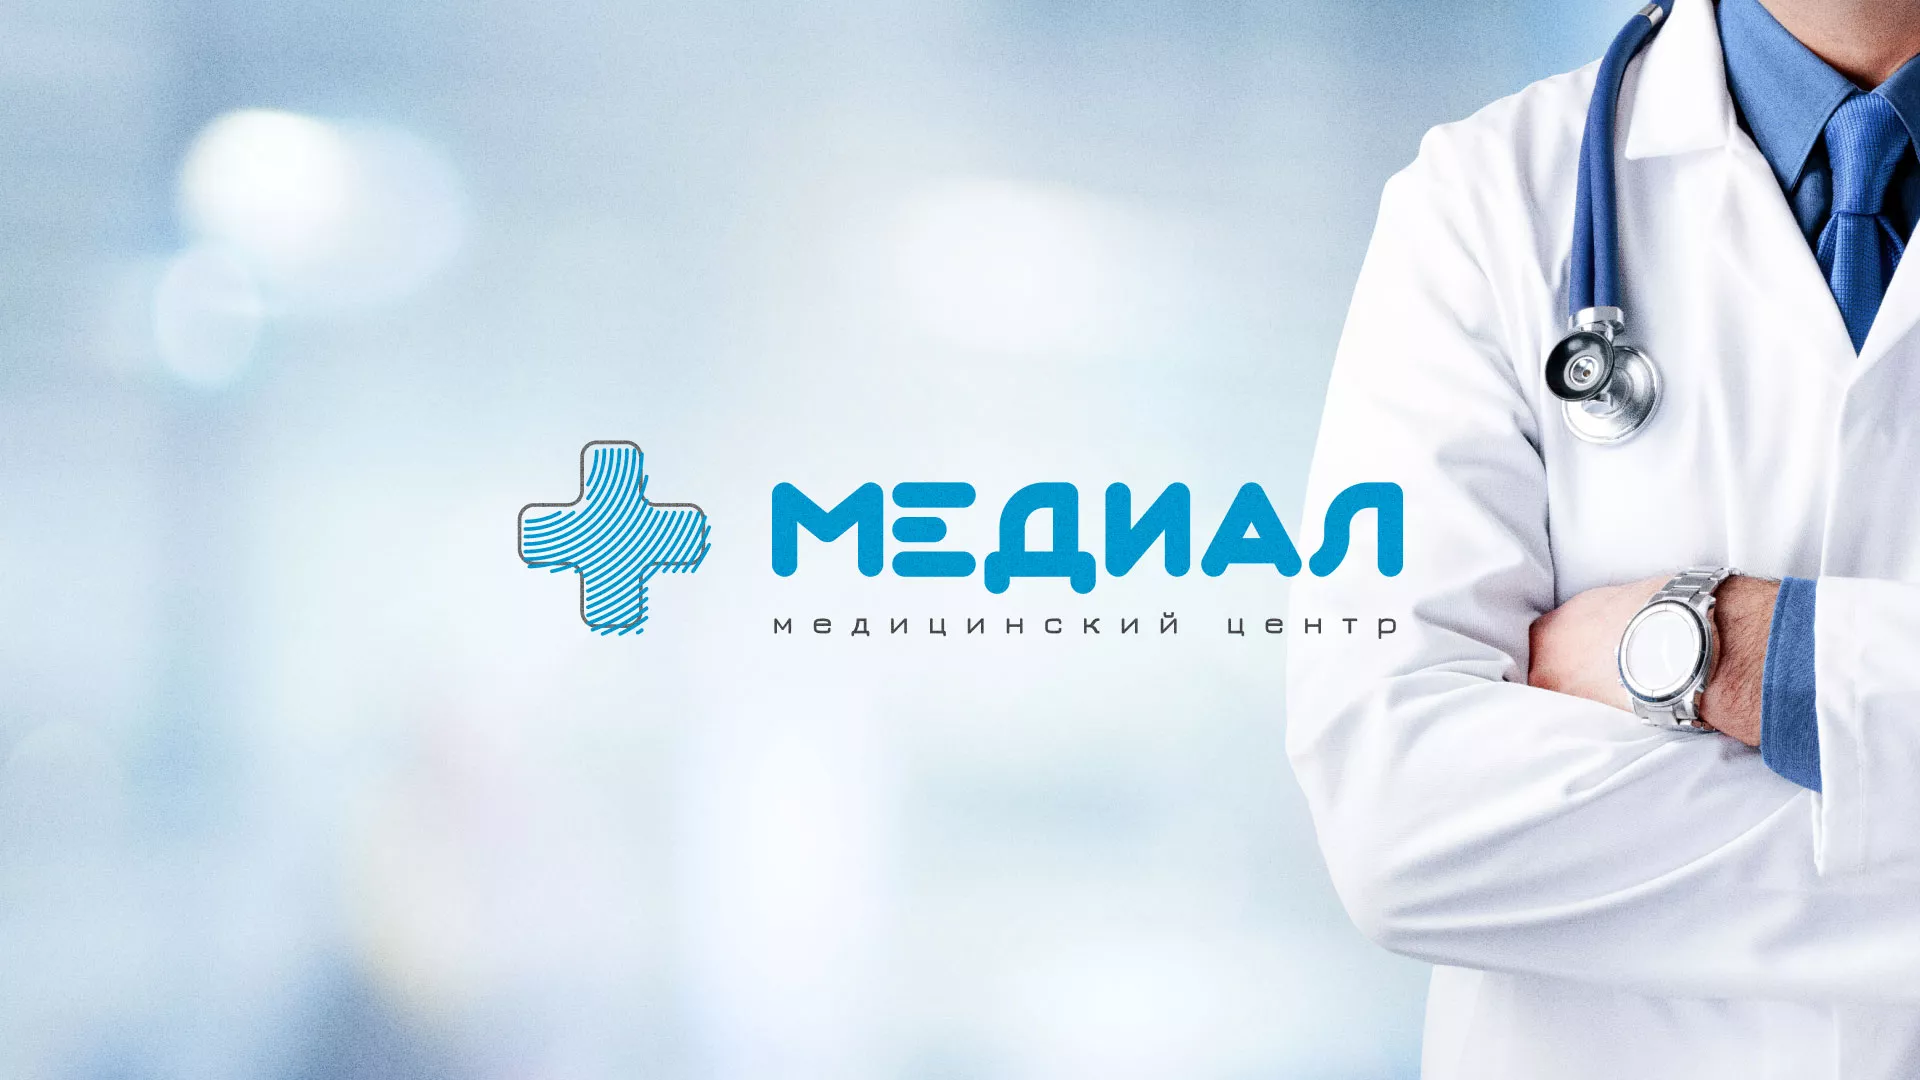 Создание сайта для медицинского центра «Медиал» в Болгаре